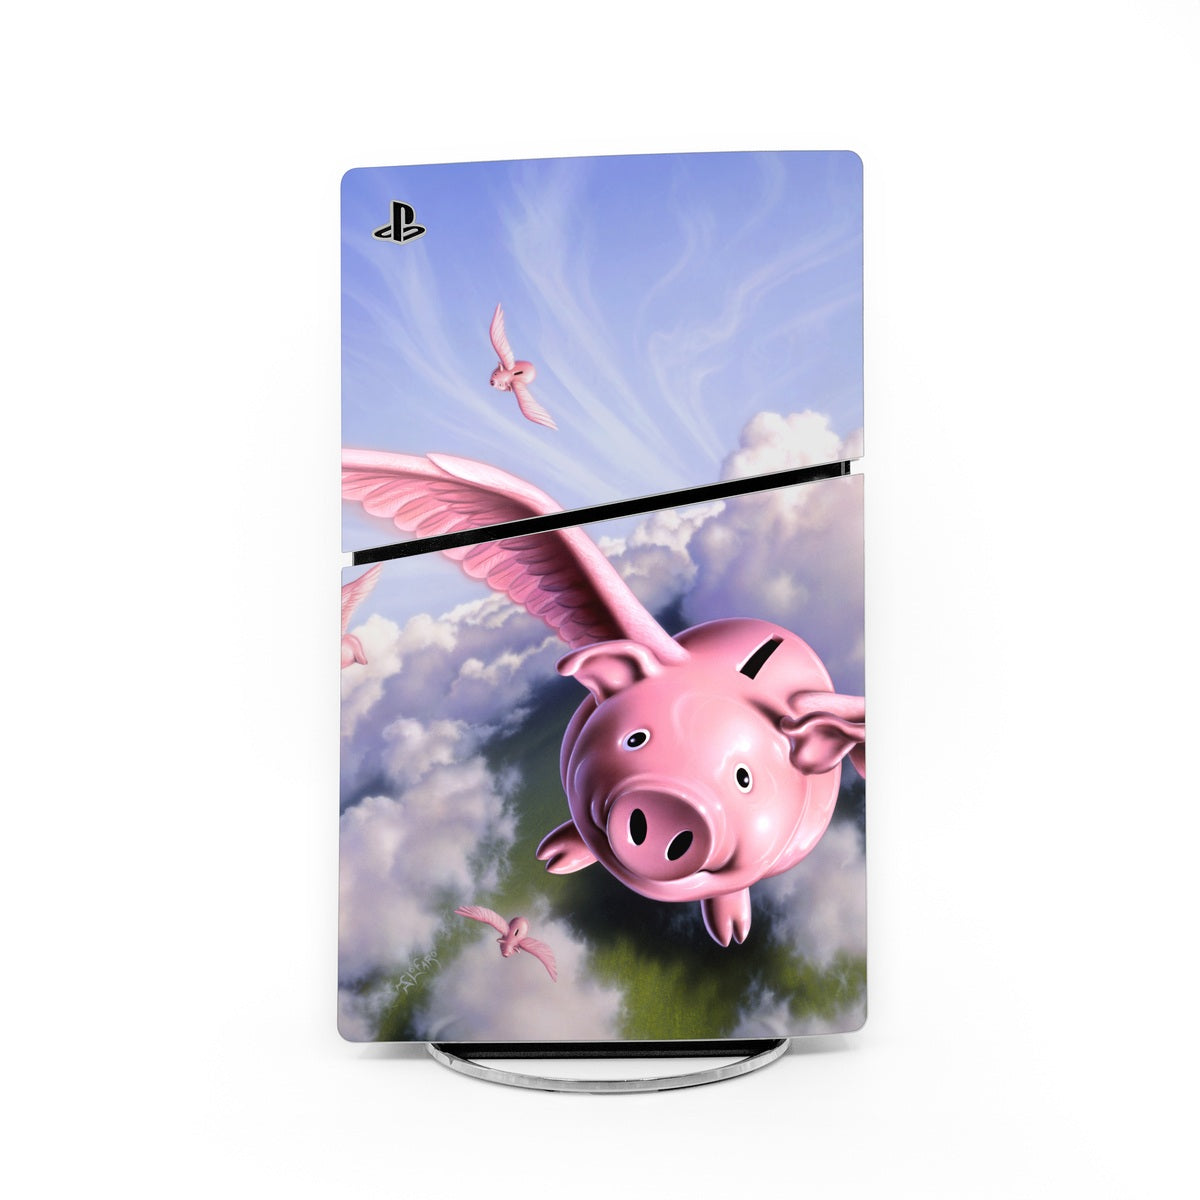 Piggies - Sony PS5 Slim Skin